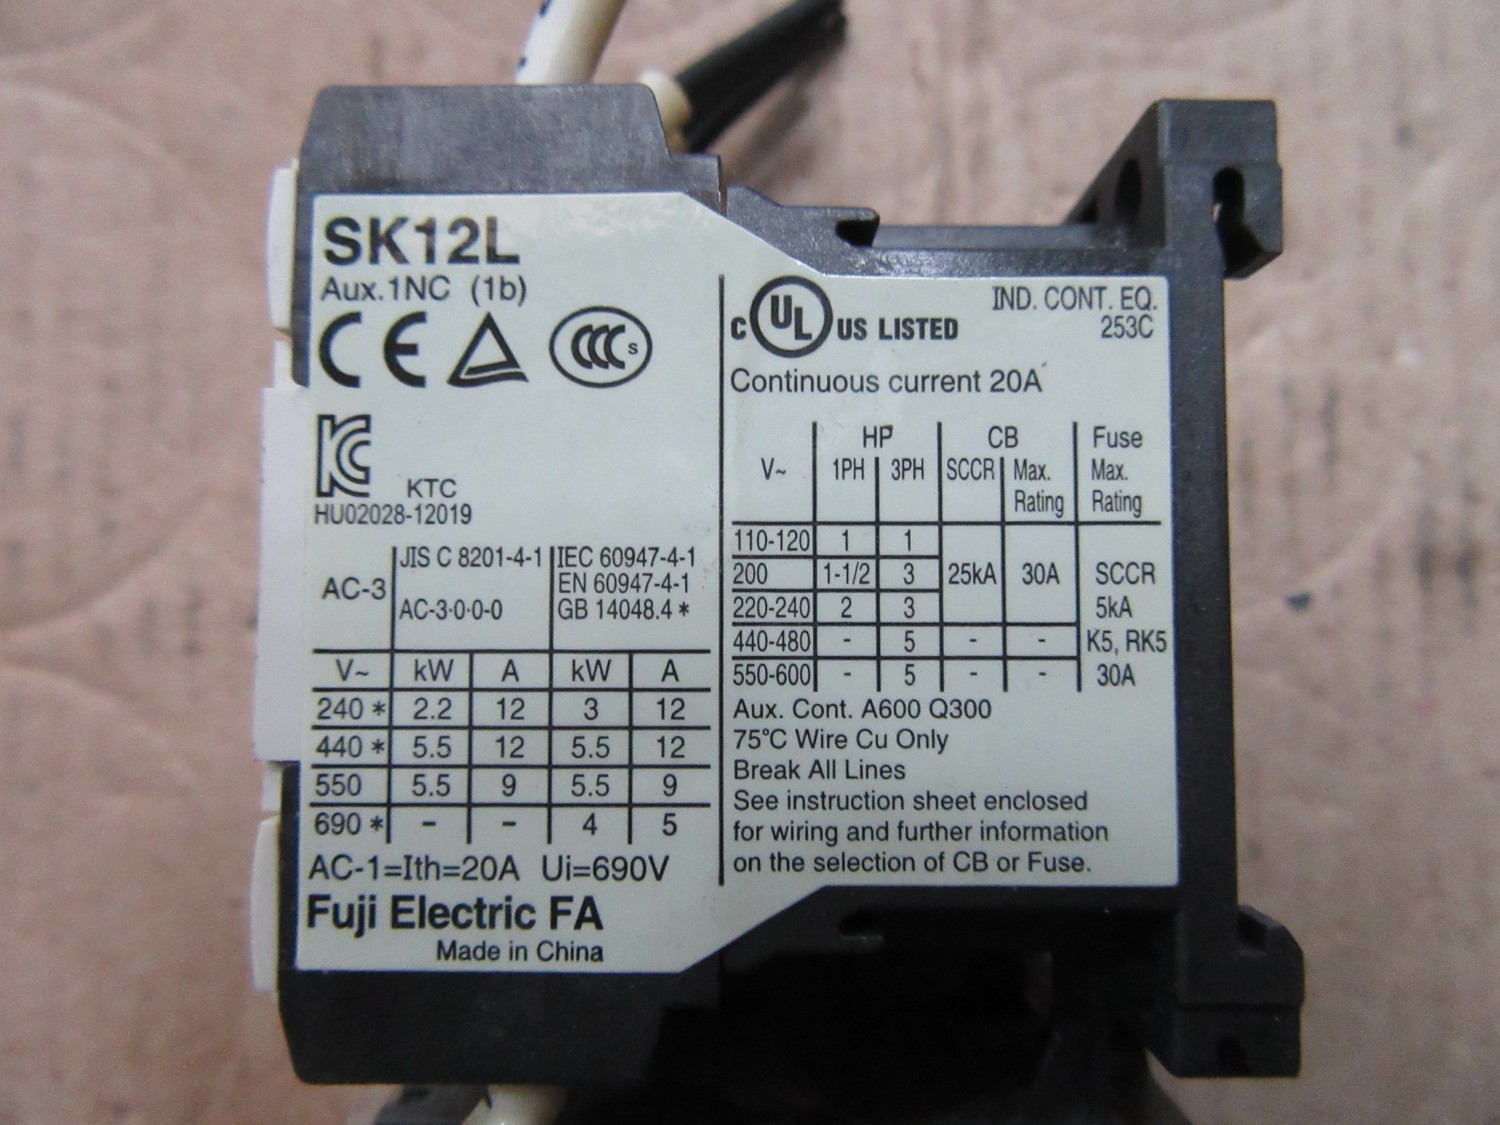 中古Other 標準形電磁開閉器TK12(6-9A)/SK12L FUJI ELECTRIC 